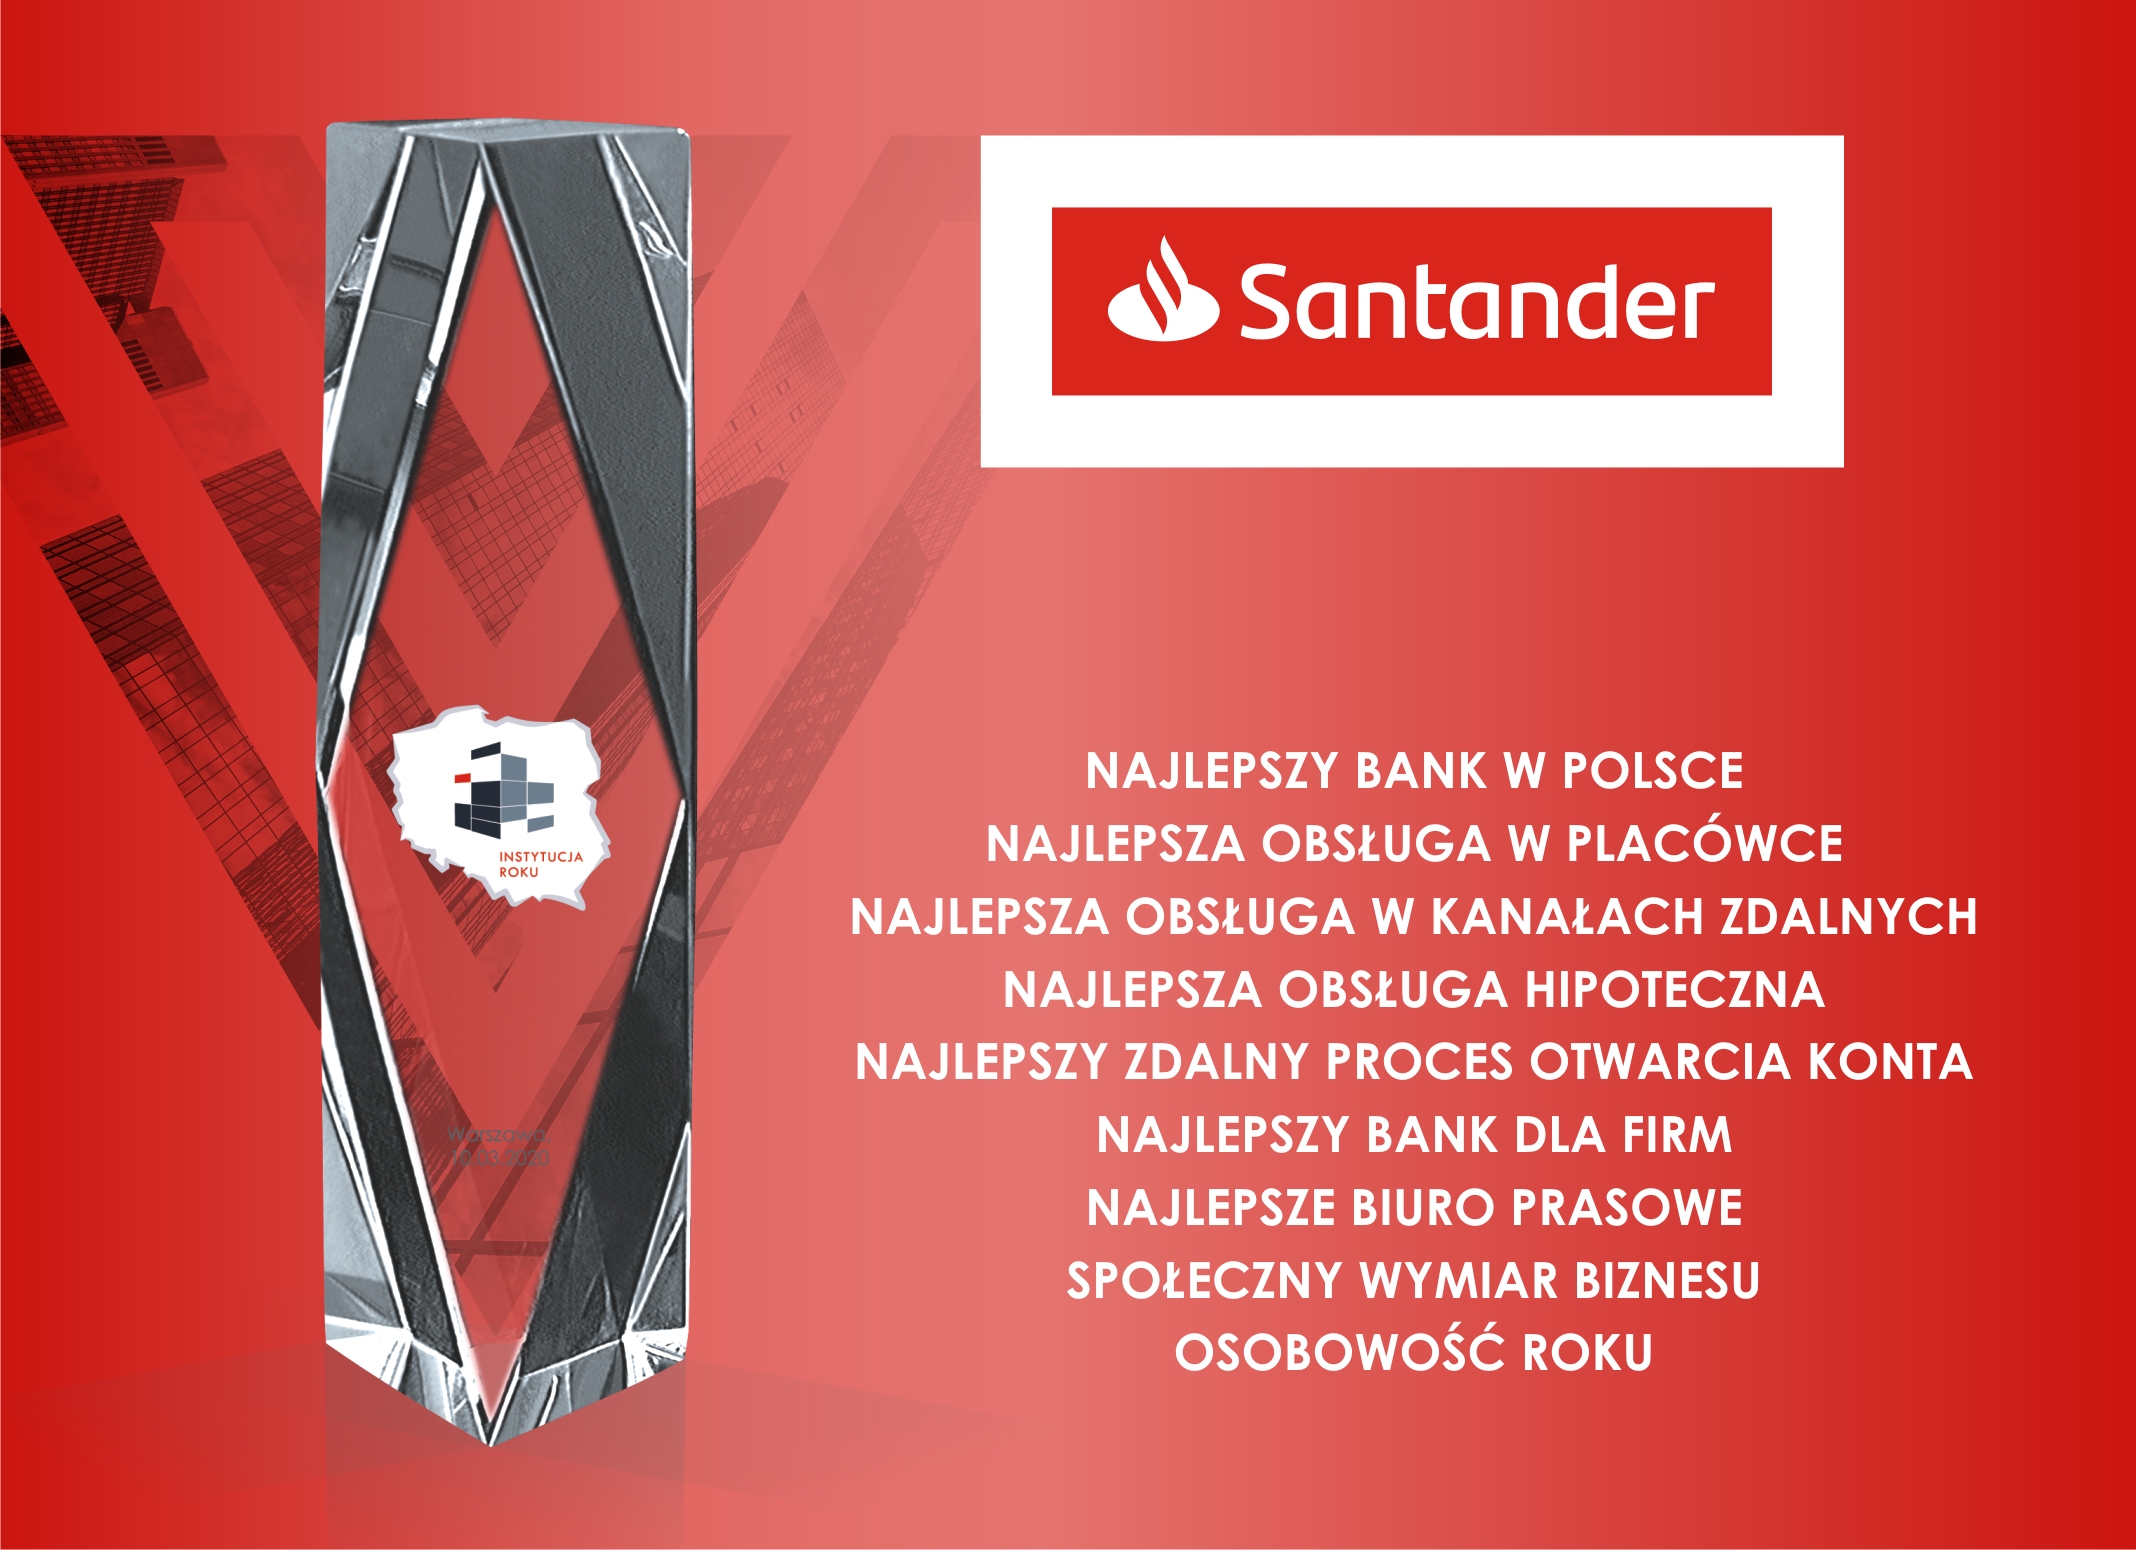 Aż 9 nagród dla Santander Bank Polska w konkursie „Instytucja Roku” 